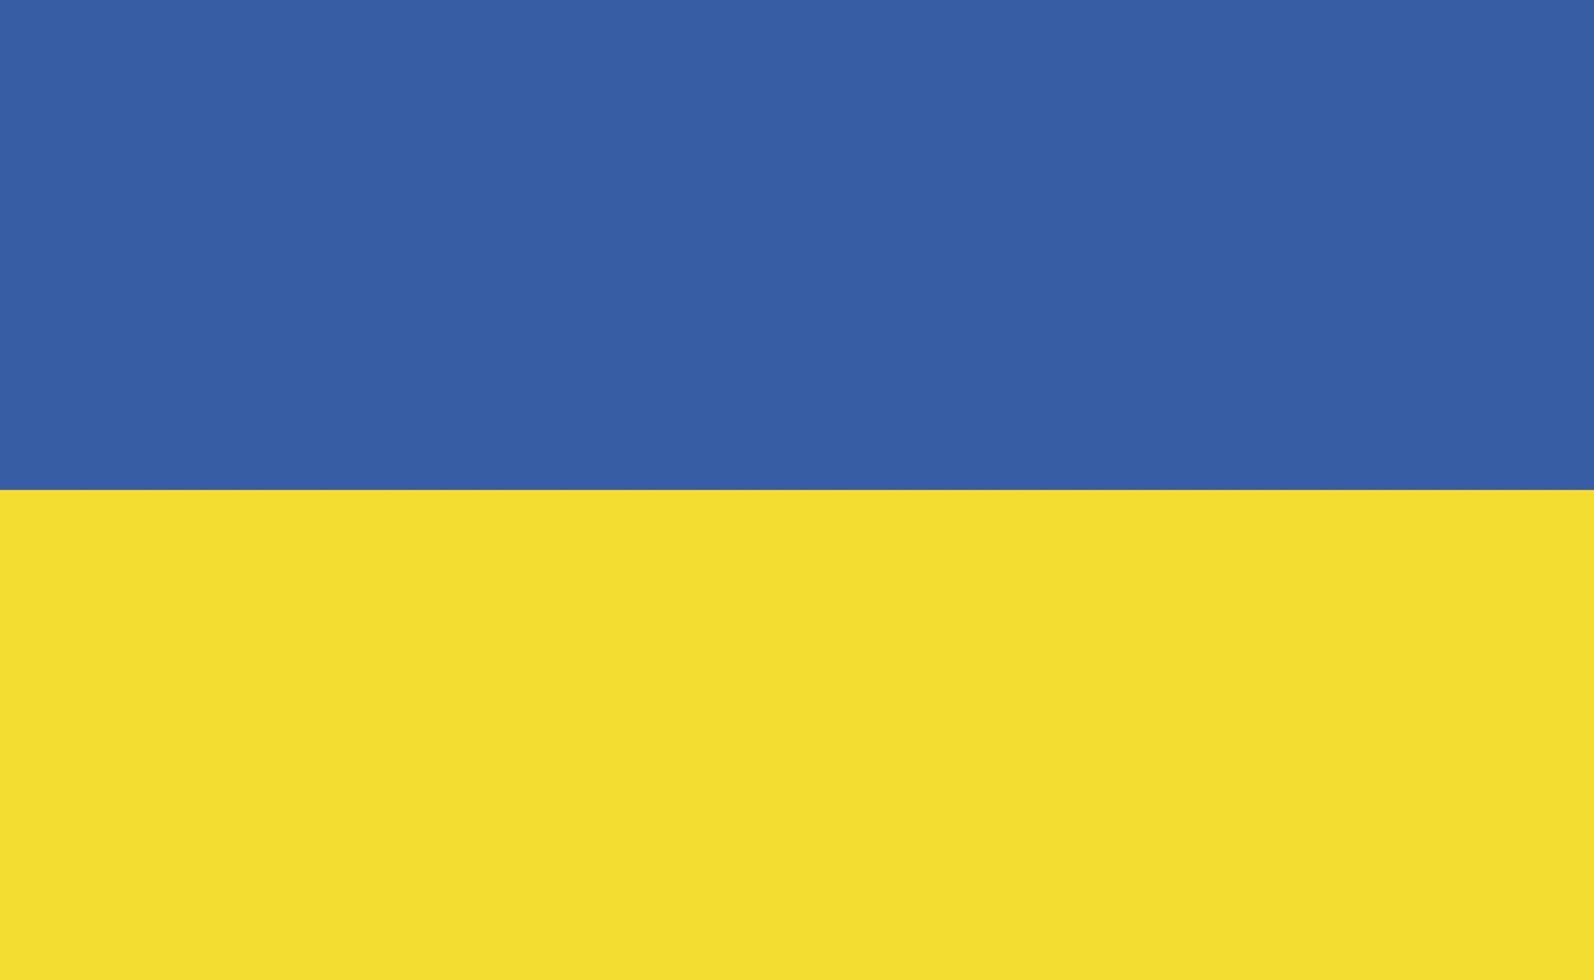 Ukraine national flag in exact proportions - Vector